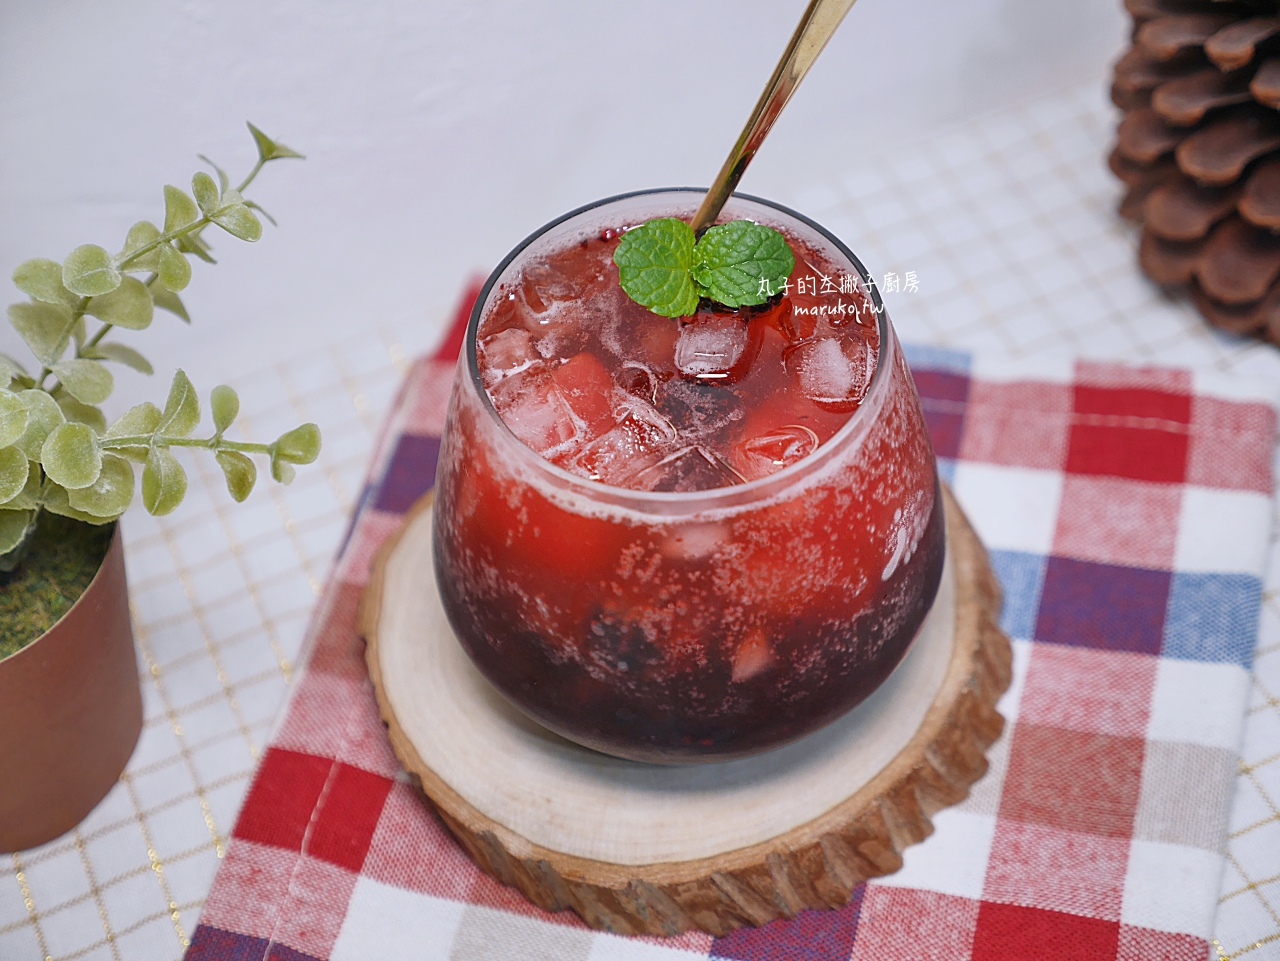 【食譜】鳳梨冰沙氣泡飲 清涼夏日飲品 簡單做 100%水果冰沙 @Maruko與美食有個約會